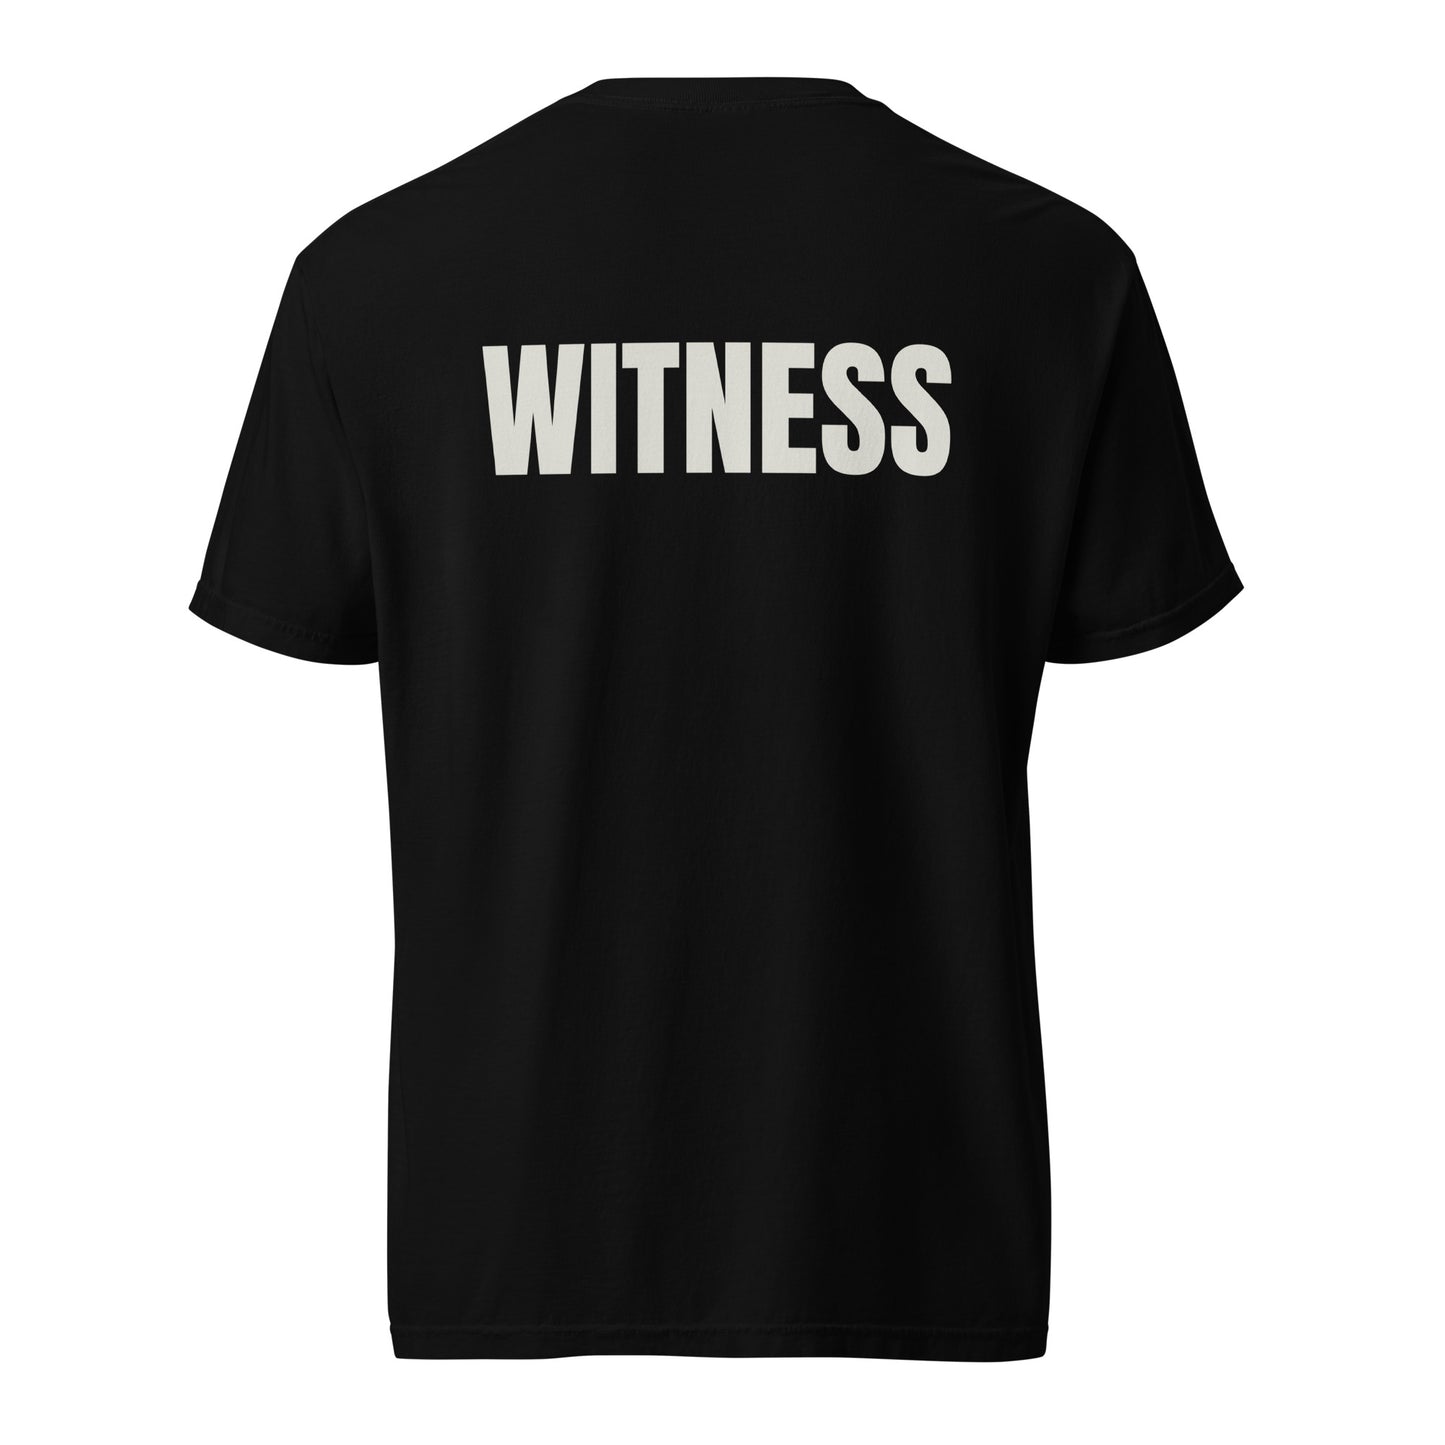 WITNESS - Unisex garment-dyed heavyweight t-shirt